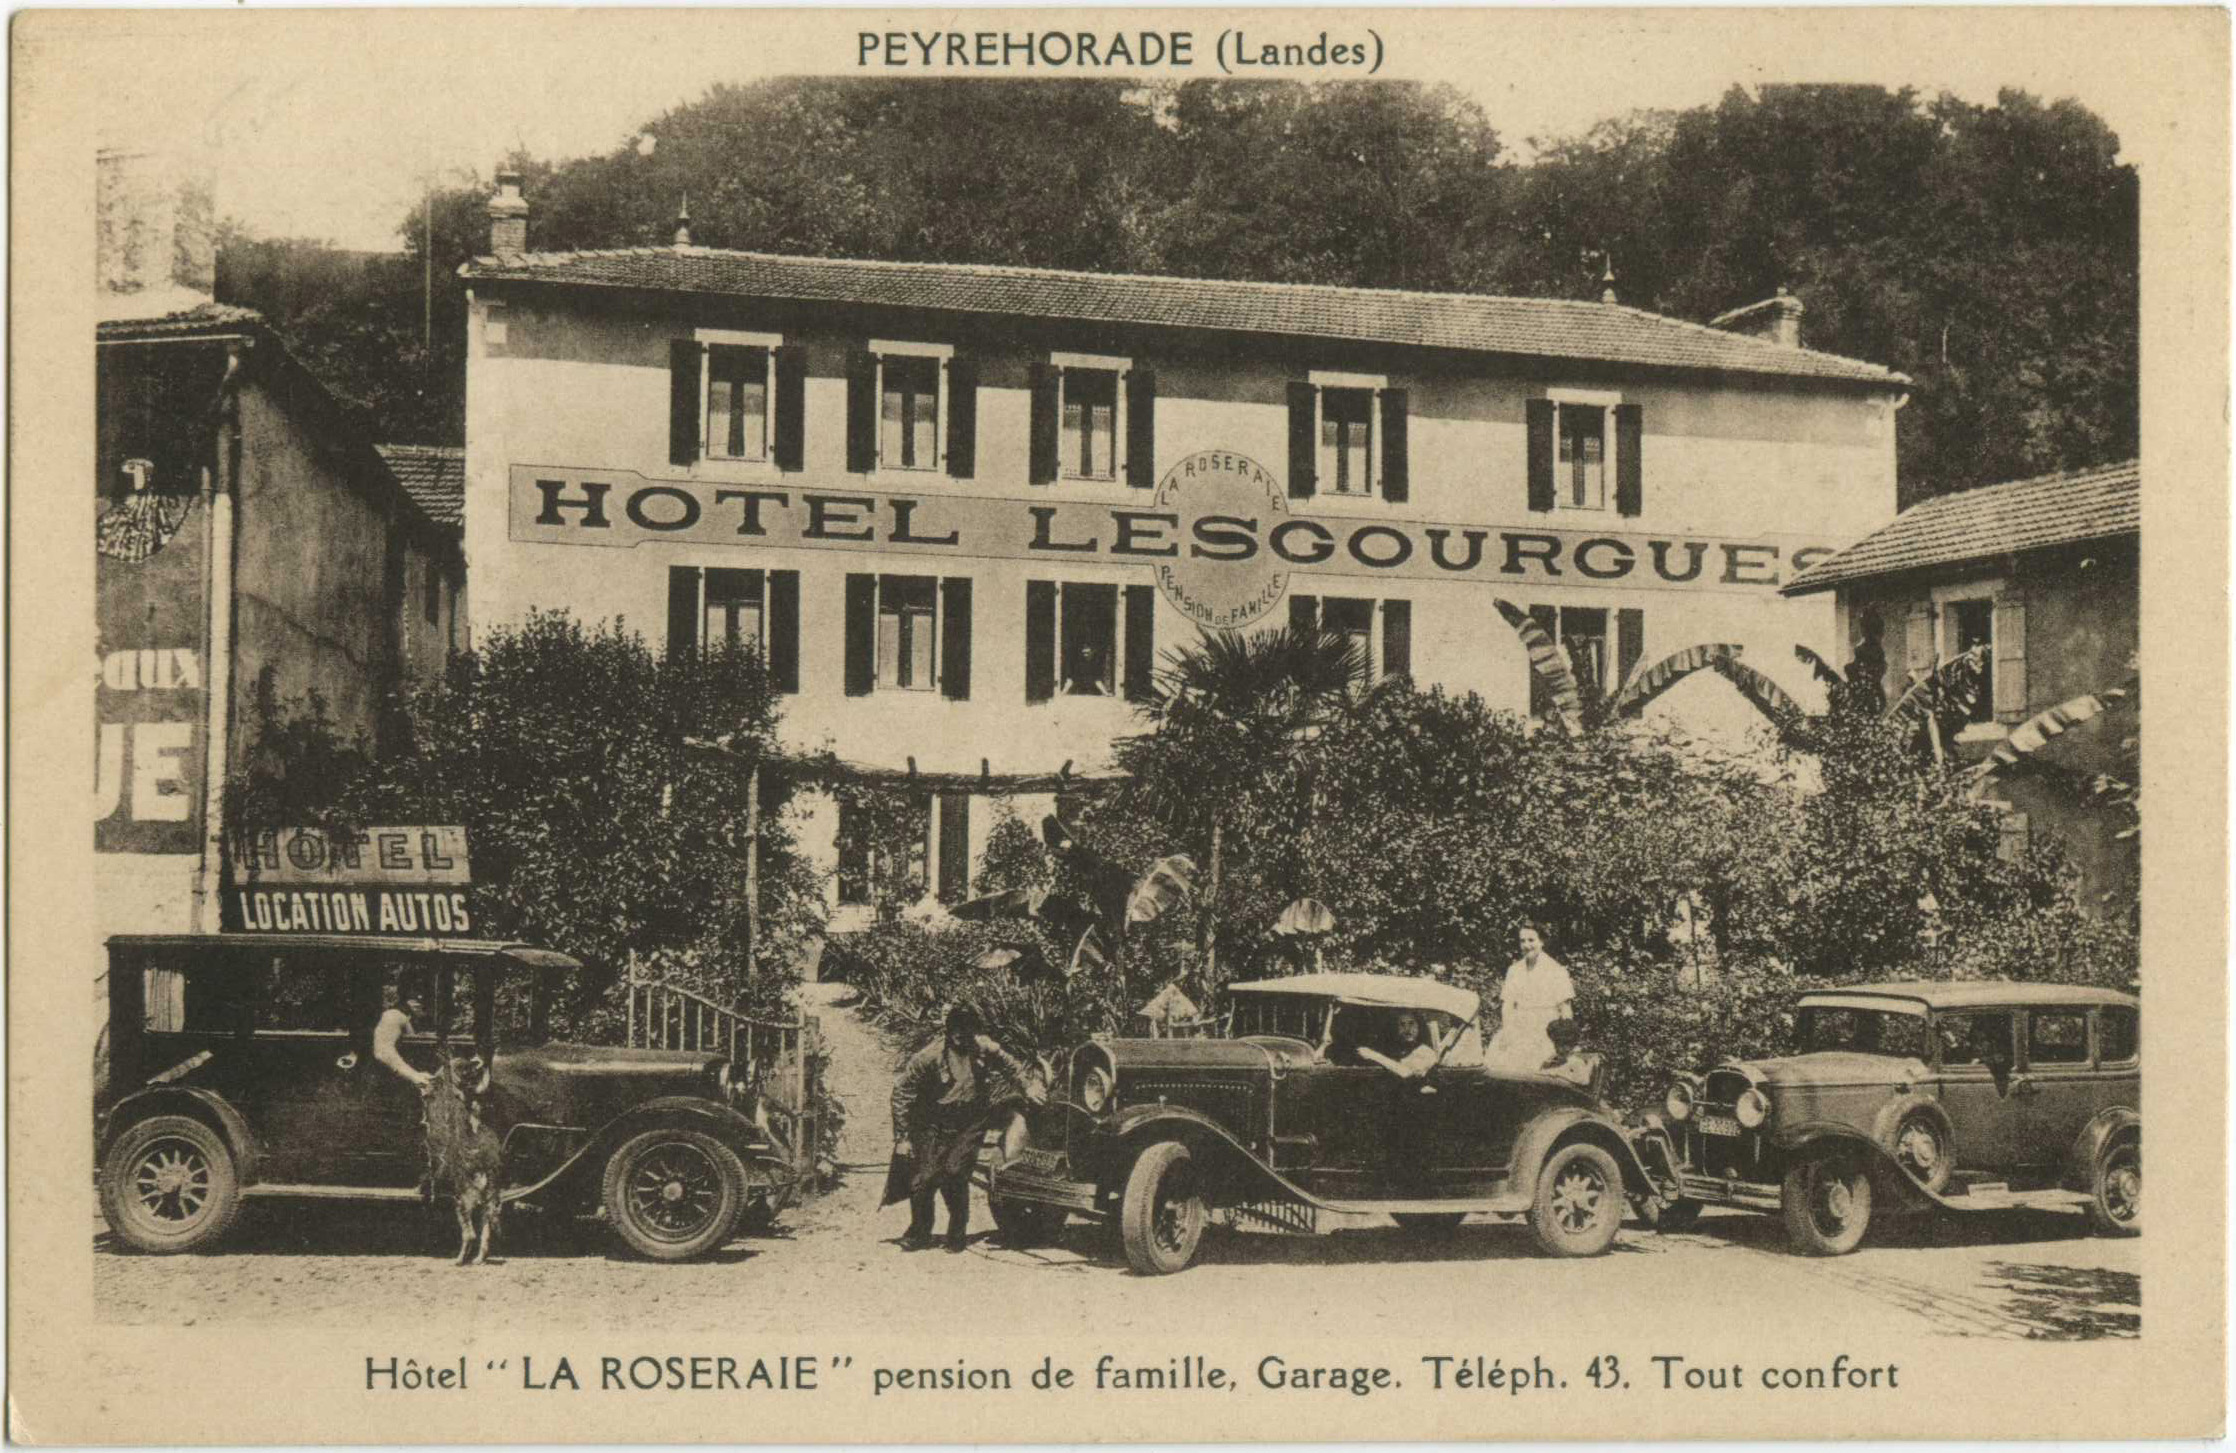 Peyrehorade - Hôtel " LA ROSERAIE " pension de famille, Garage. Téléph. 43. Tout confort